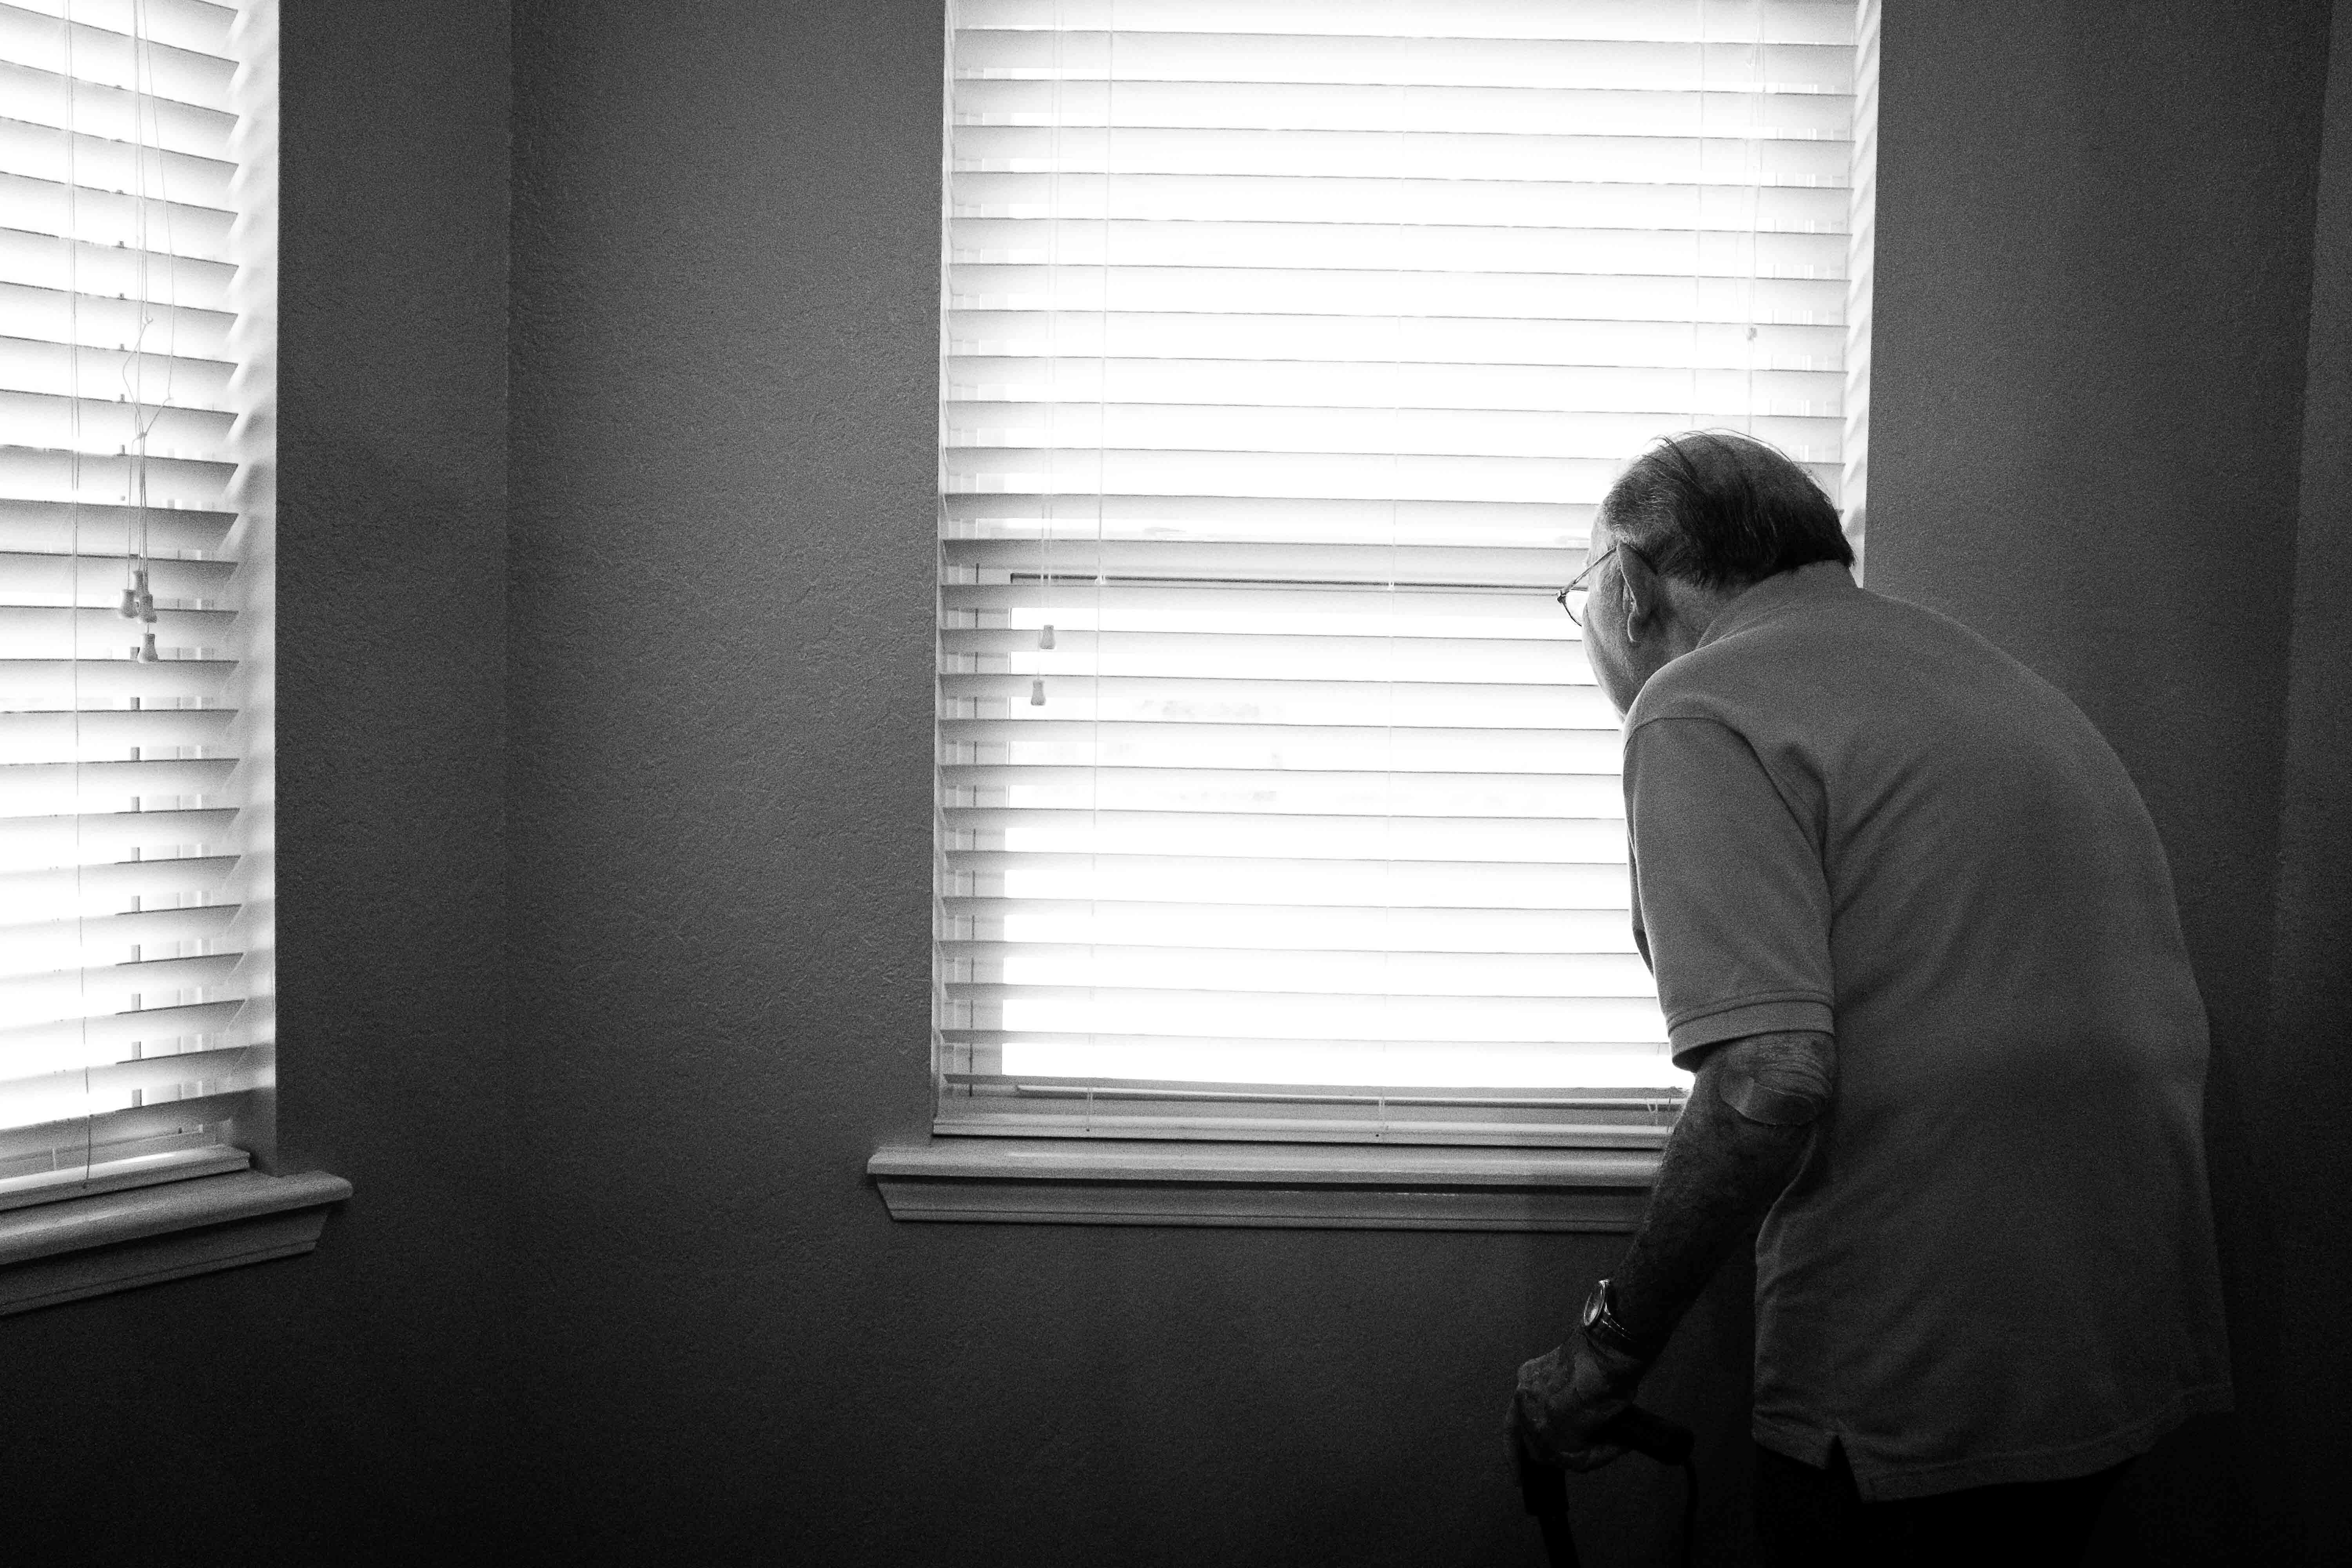 Una persona gran mirant a través de les escletxes de la persiana en una finestra.